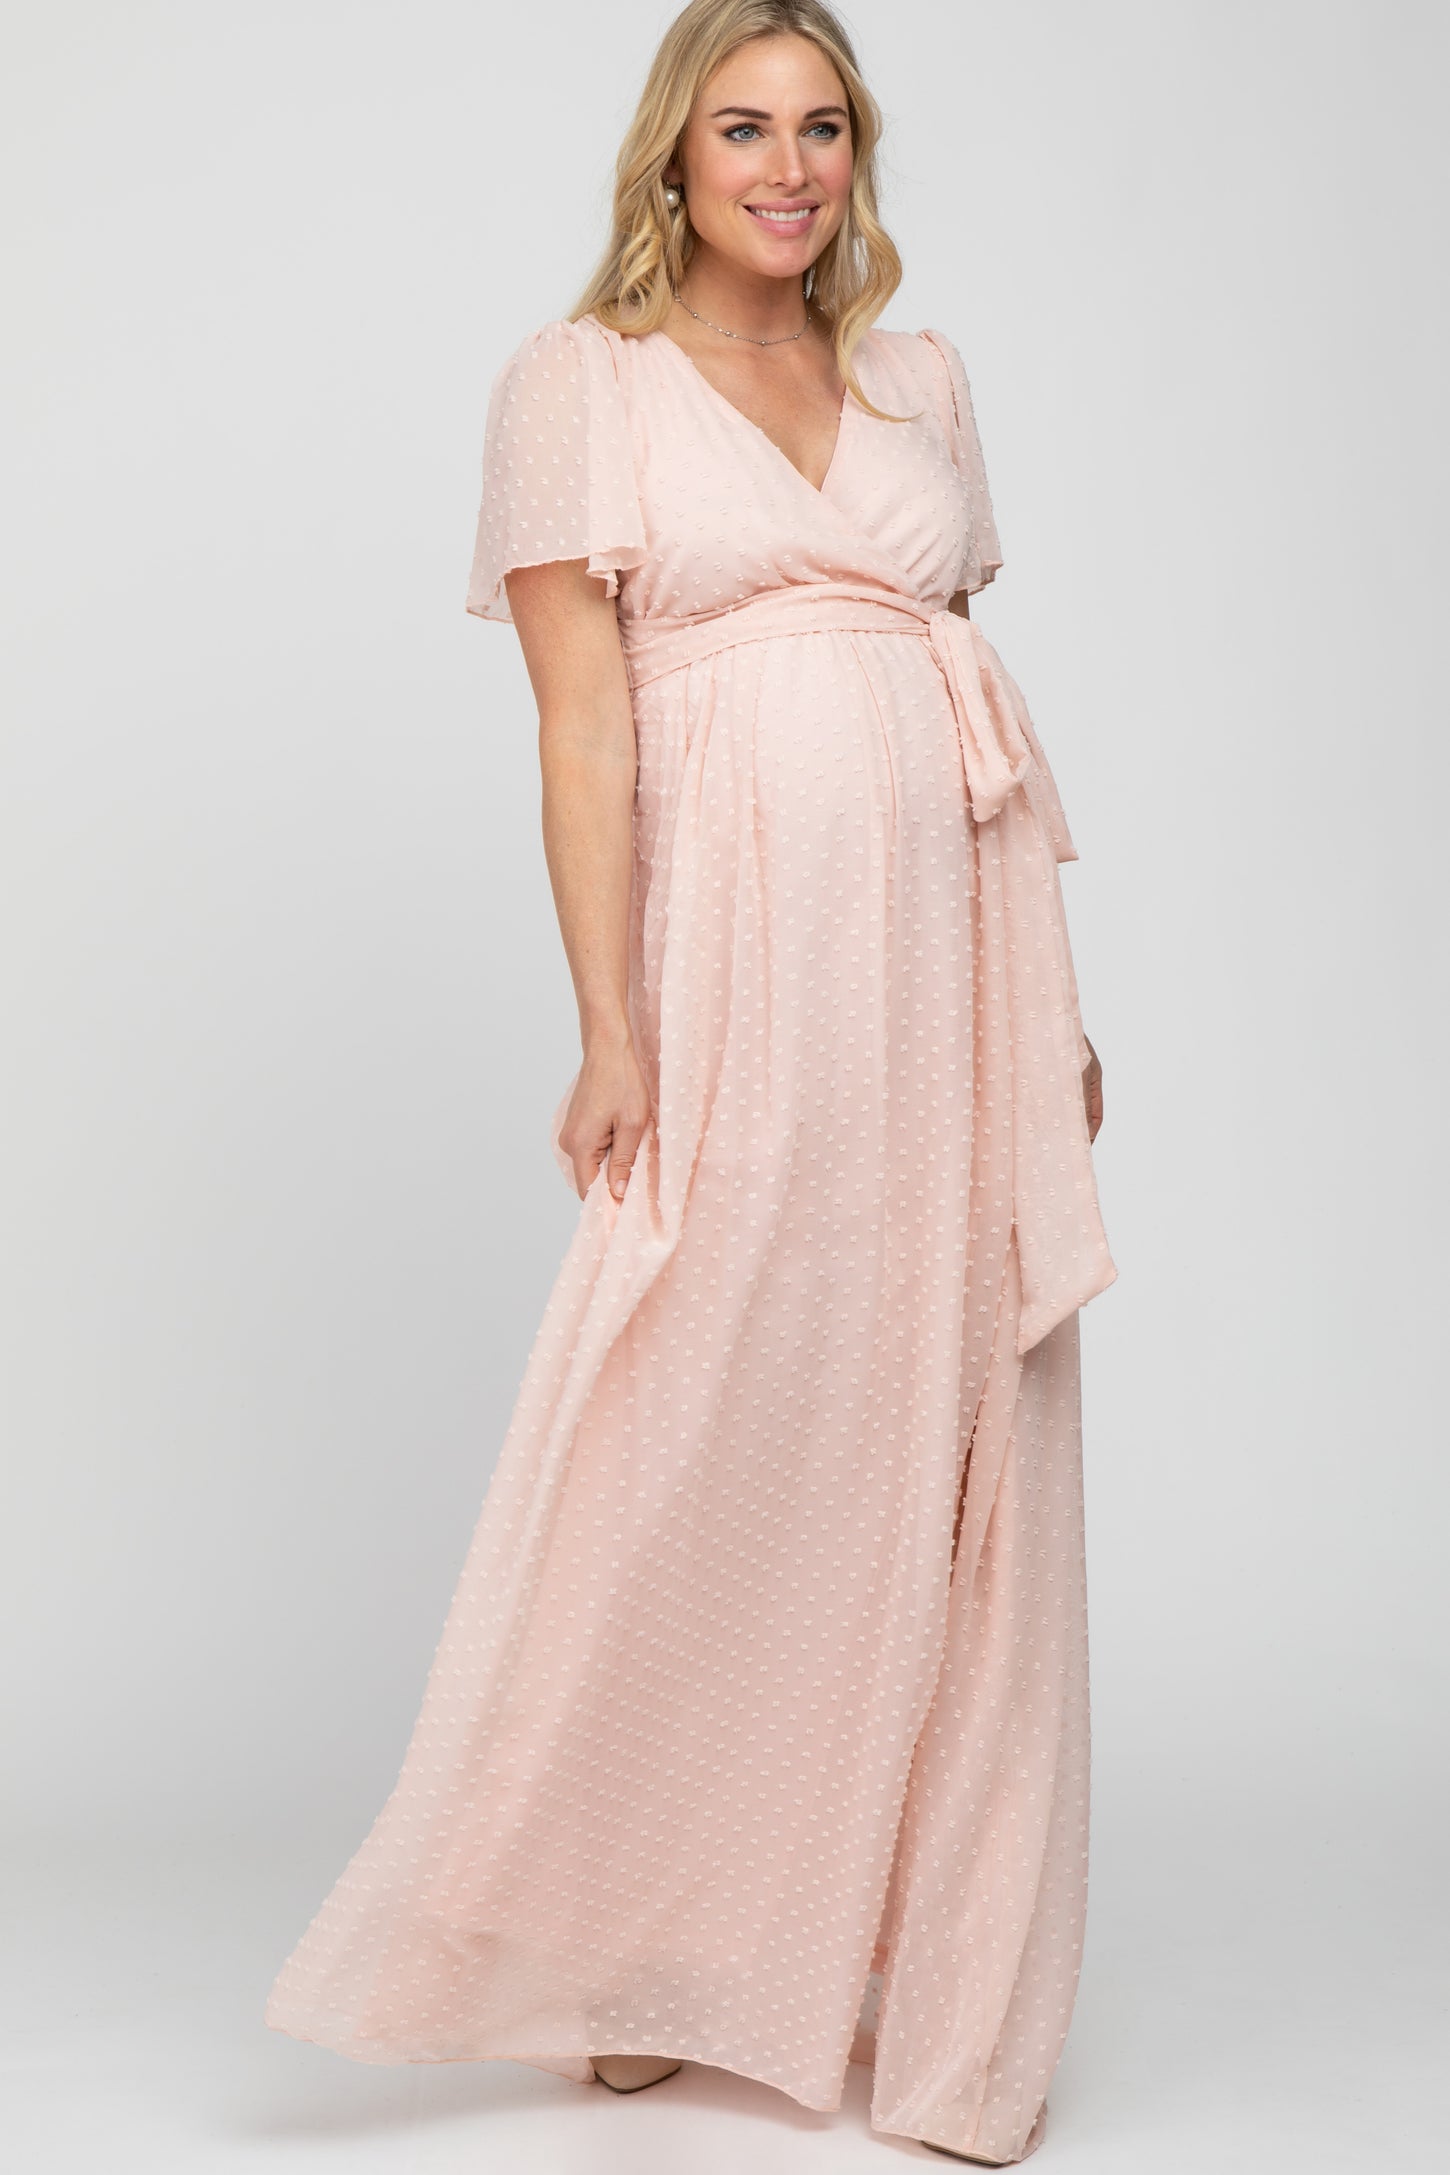 Light Pink Swiss Dot Chiffon Maternity Maxi Dress